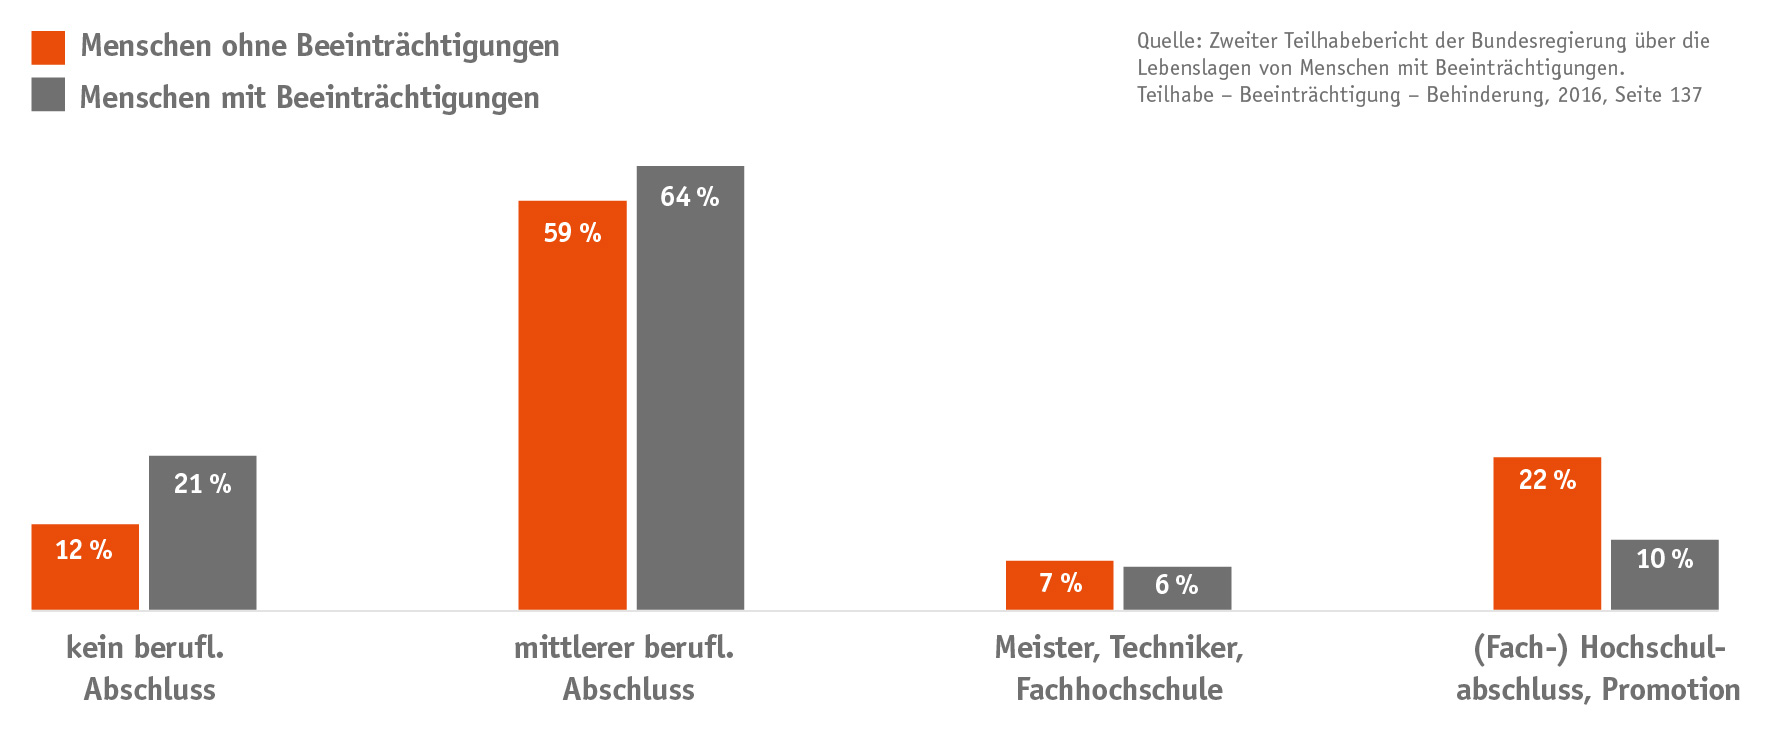 Infografik: 21% ohne Abschluss, 64% mit mittlerem beruflichen Abschluss, 6% sind Meister/Techniker, 10% mit Hochschlabschluss oder Promotion